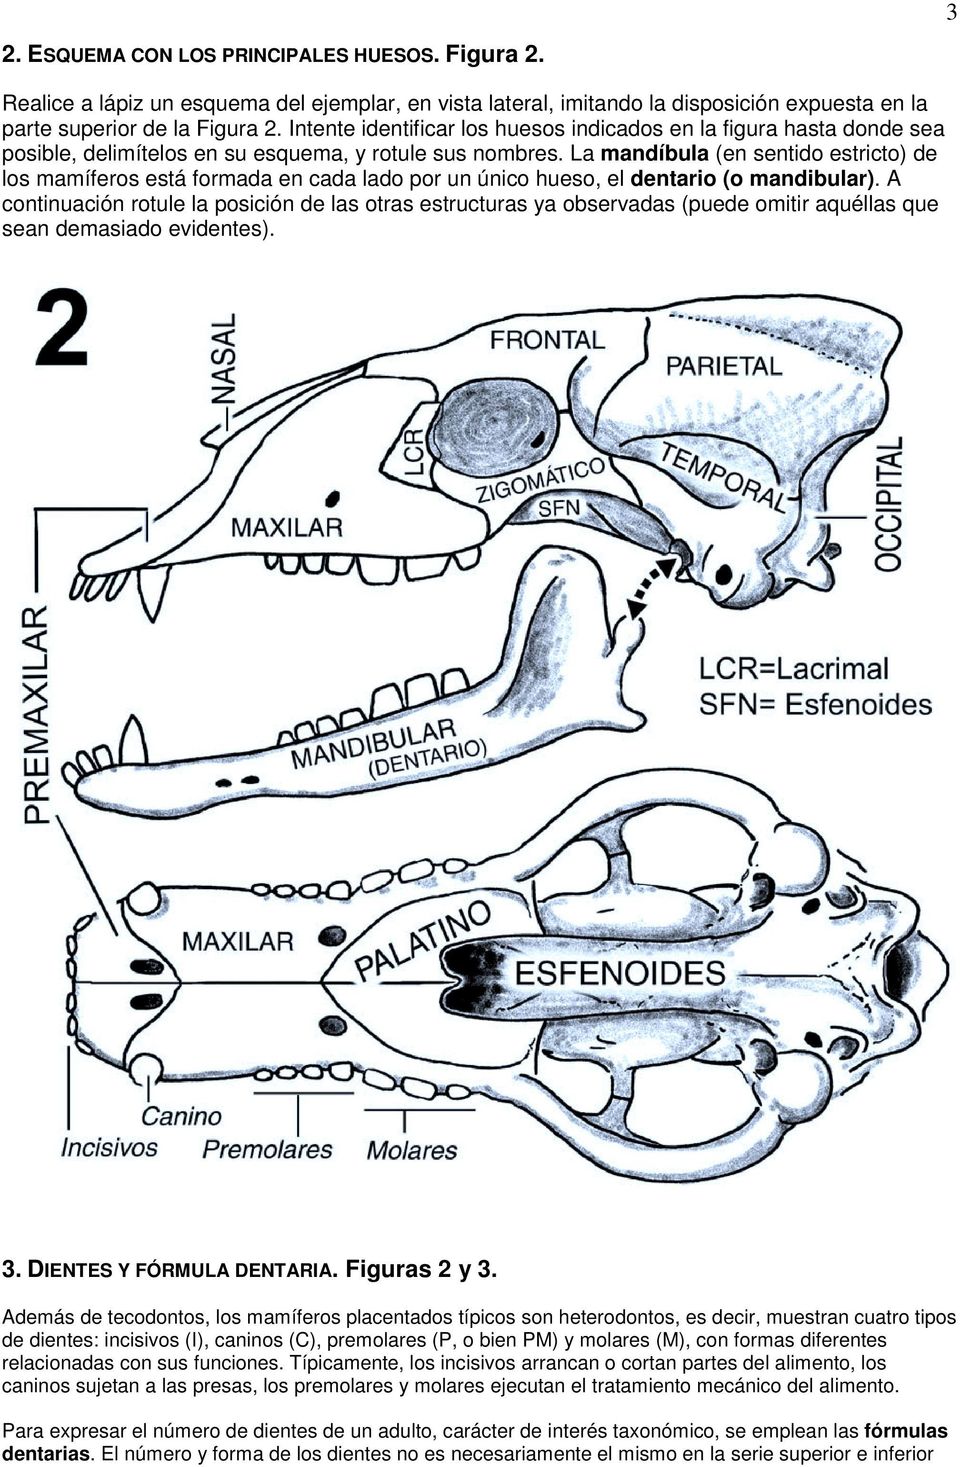 La mandíbula (en sentido estricto) de los mamíferos está formada en cada lado por un único hueso, el dentario (o mandibular).